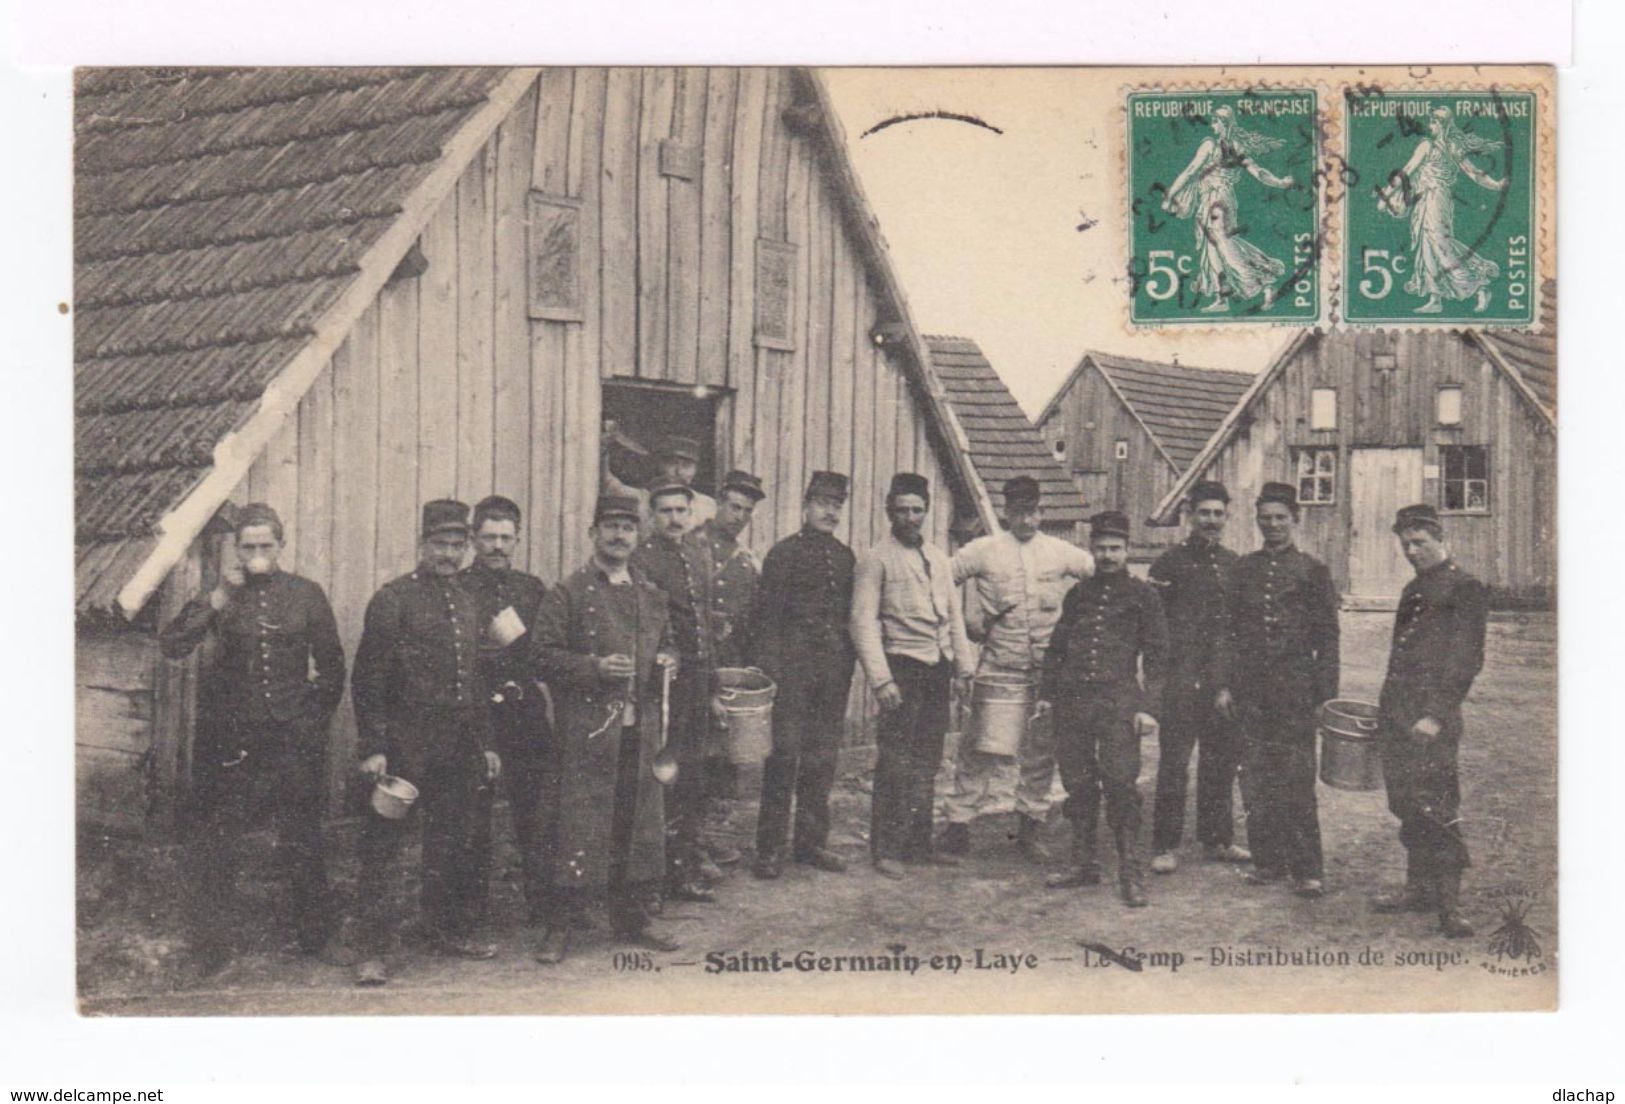 Saint Germain En Laye. Yvelines. Le Camp. Distribution De Soupe. (1949r) - Personnages